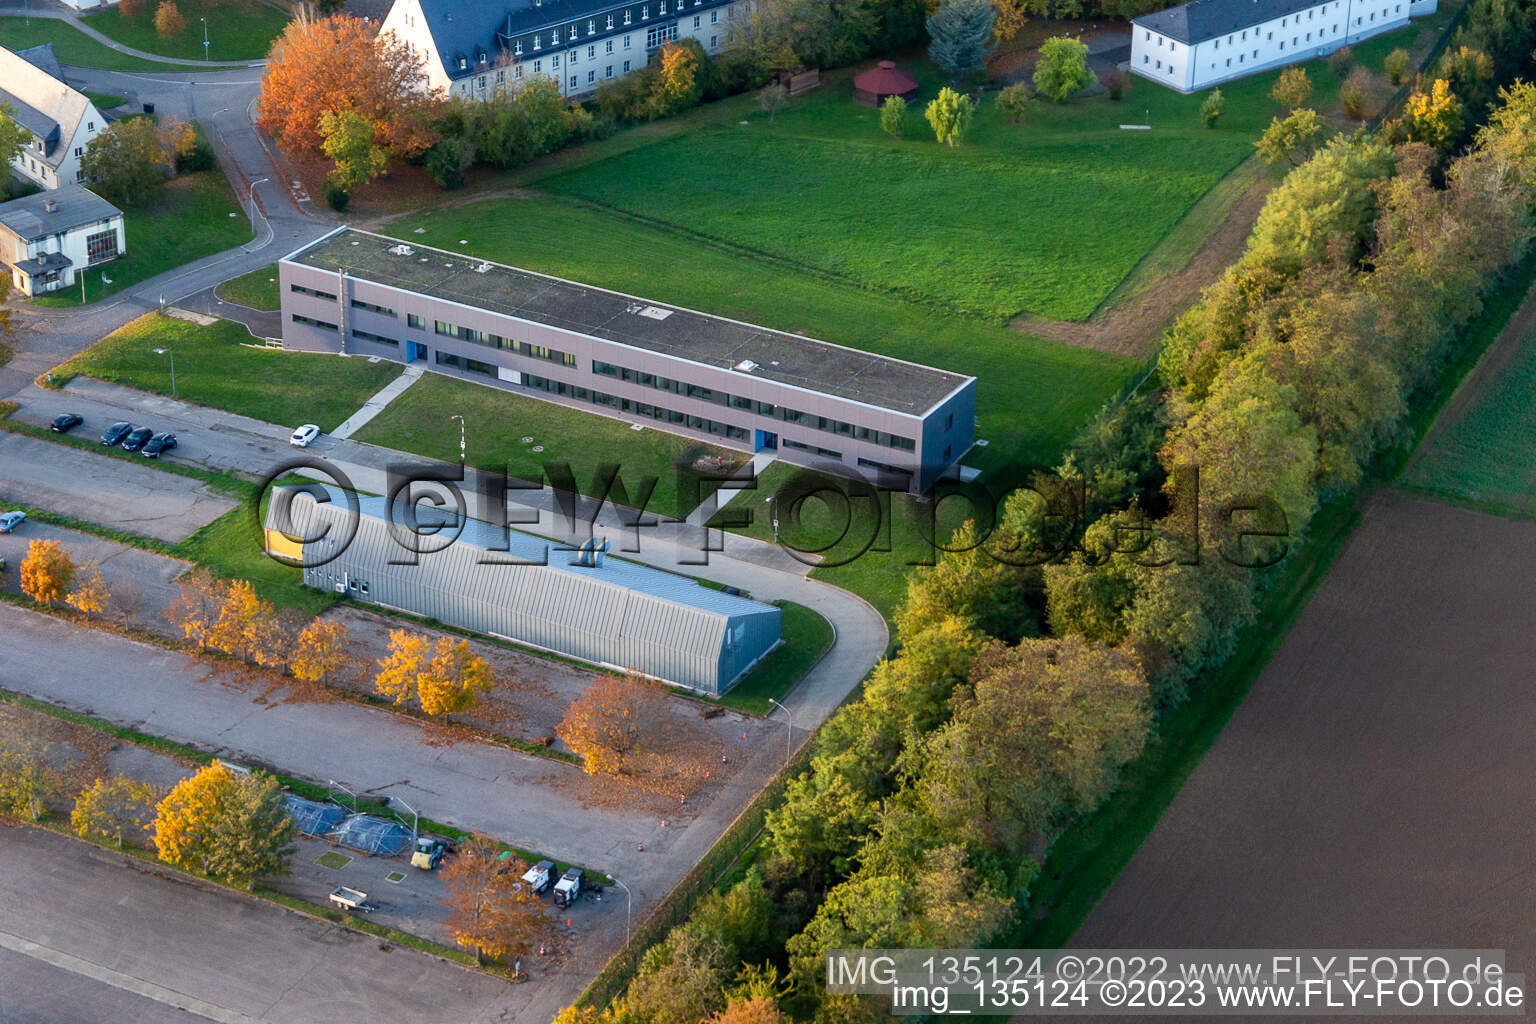 Vue aérienne de Centre électronique de la Bundeswehr dans la caserne Mackensen à Bad Bergzabern dans le département Rhénanie-Palatinat, Allemagne